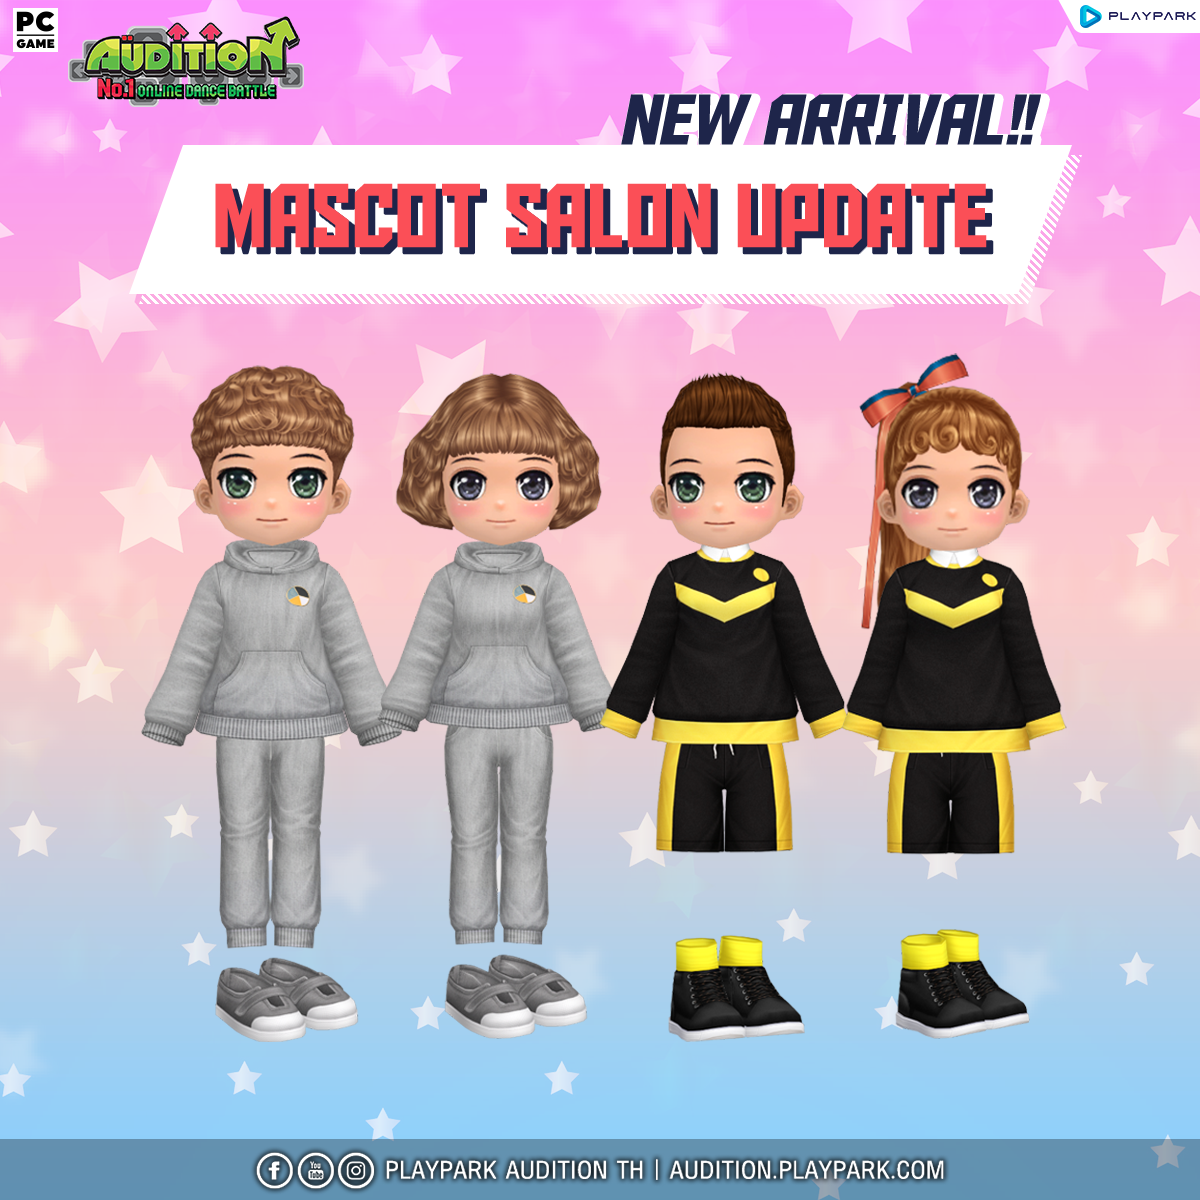 7 กันยายนนี้ Update เพลงใหม่, Mascot Salon และไอเทมใหม่!!  